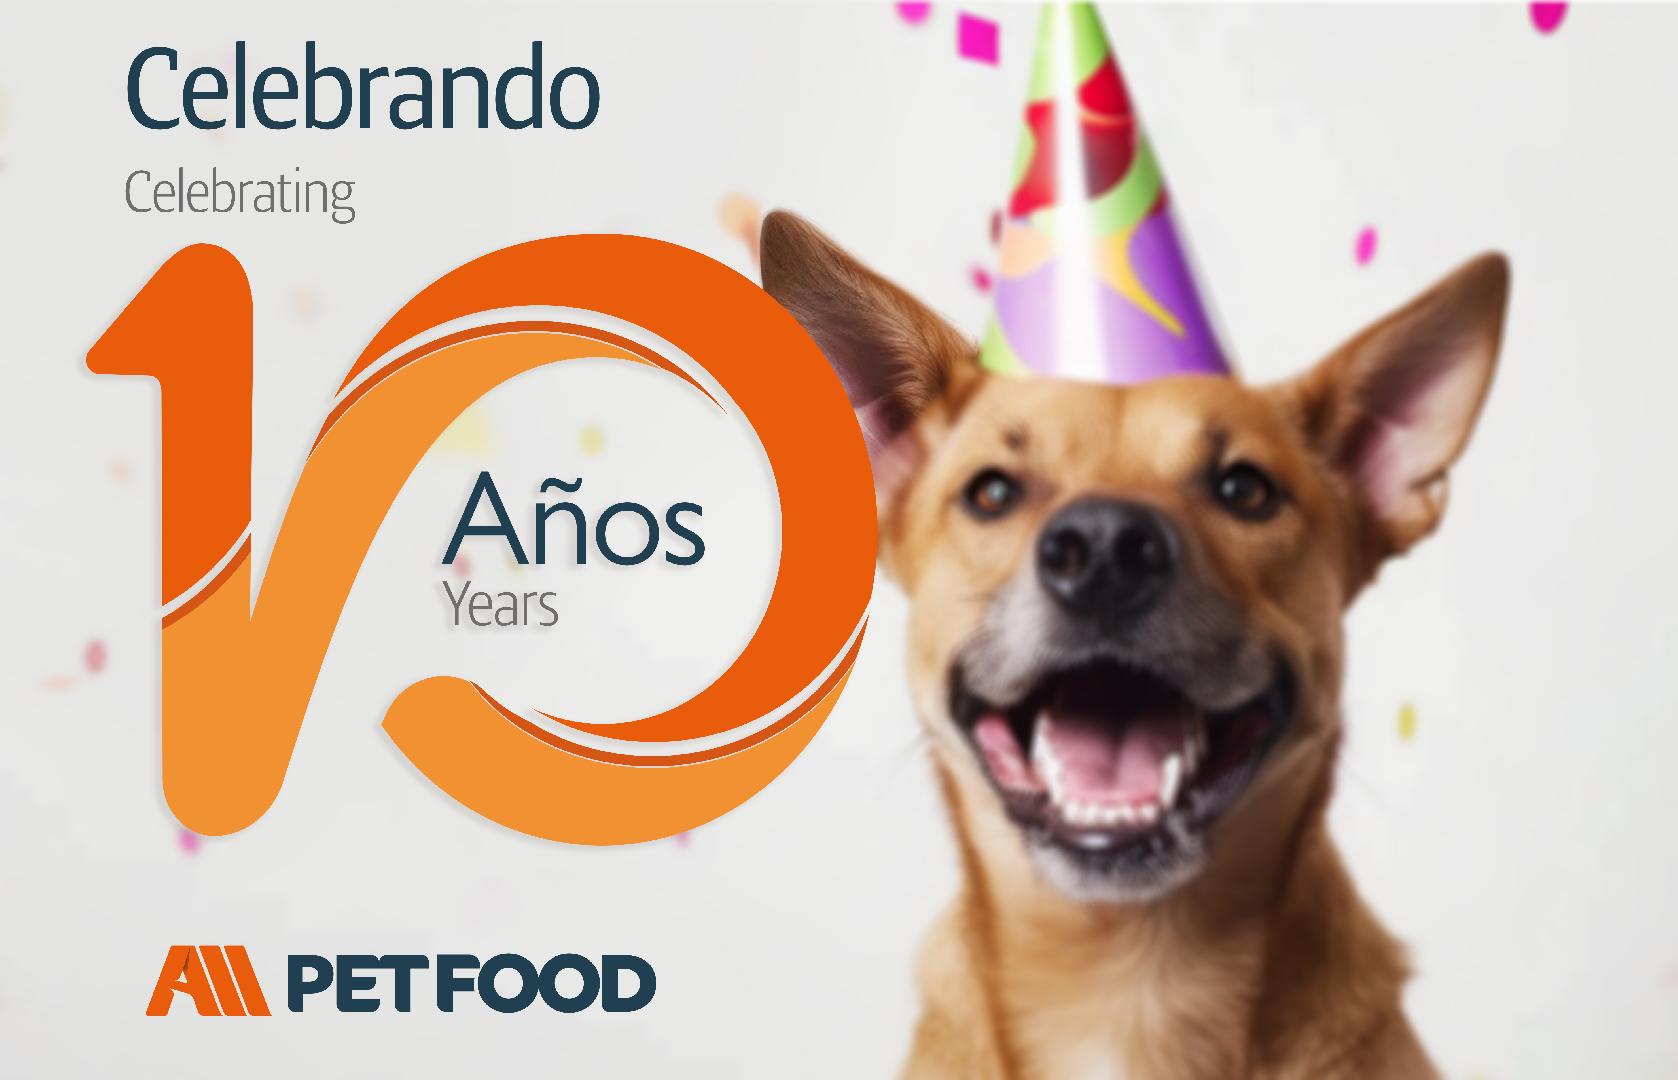 All Pet Food: Celebrando una década de conexiones